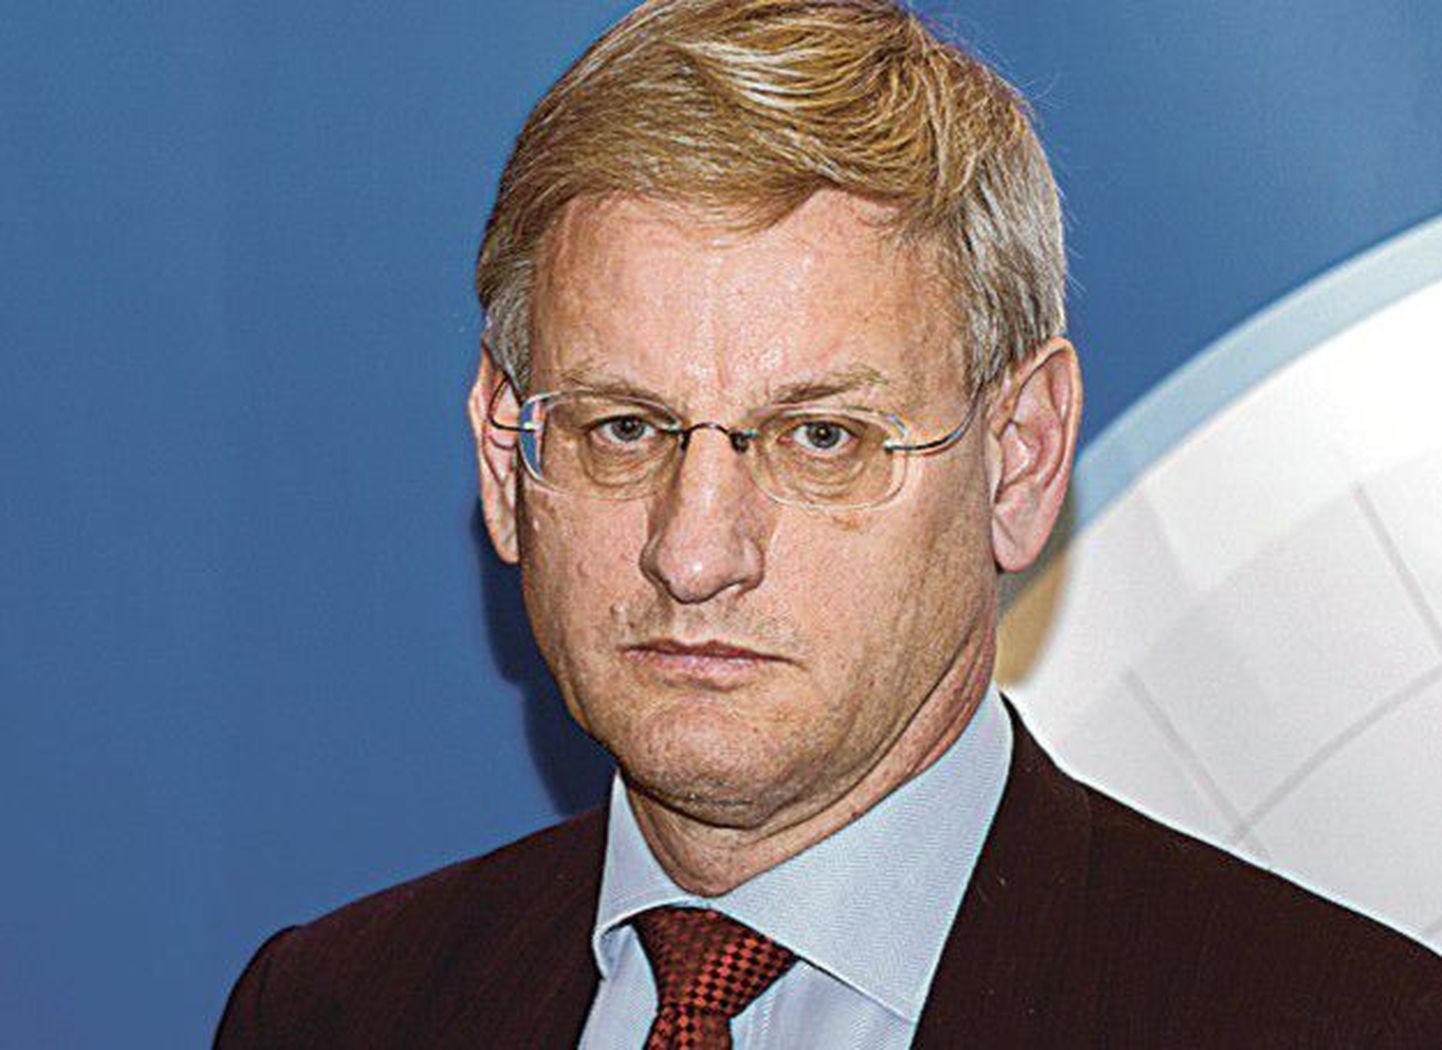 Карл Билдт,
министр иностранных дел Швеции (премьер-министр Швеции 
с октября 1991 до 1994 года)